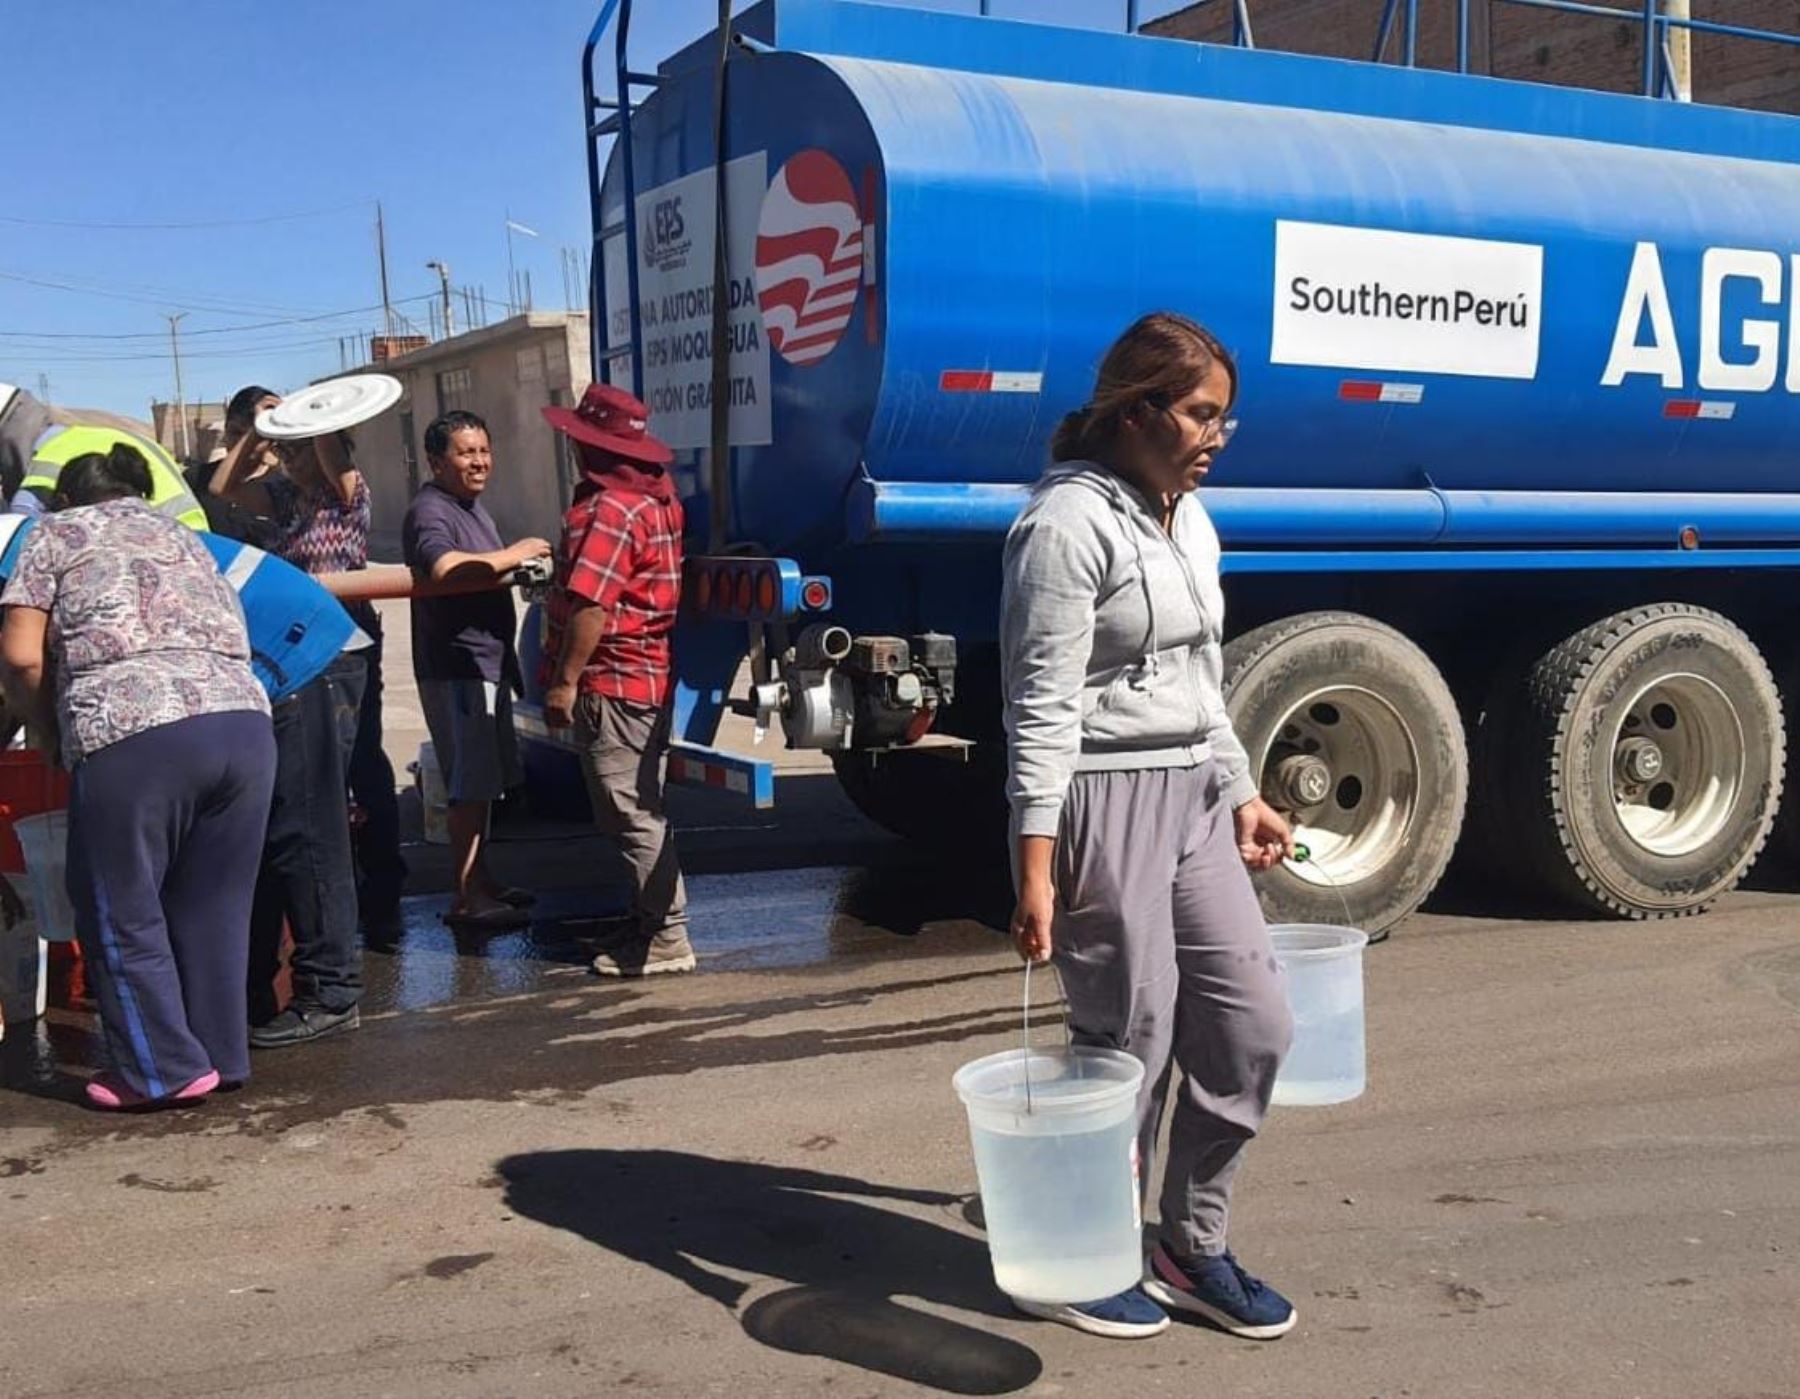 El sector privado se sumó a la distribución de agua potable a la población de Moquegua afectada por la restricción del servicio a causa del derrame de petróleo ocurrido en esa región. ANDINA/Difusión